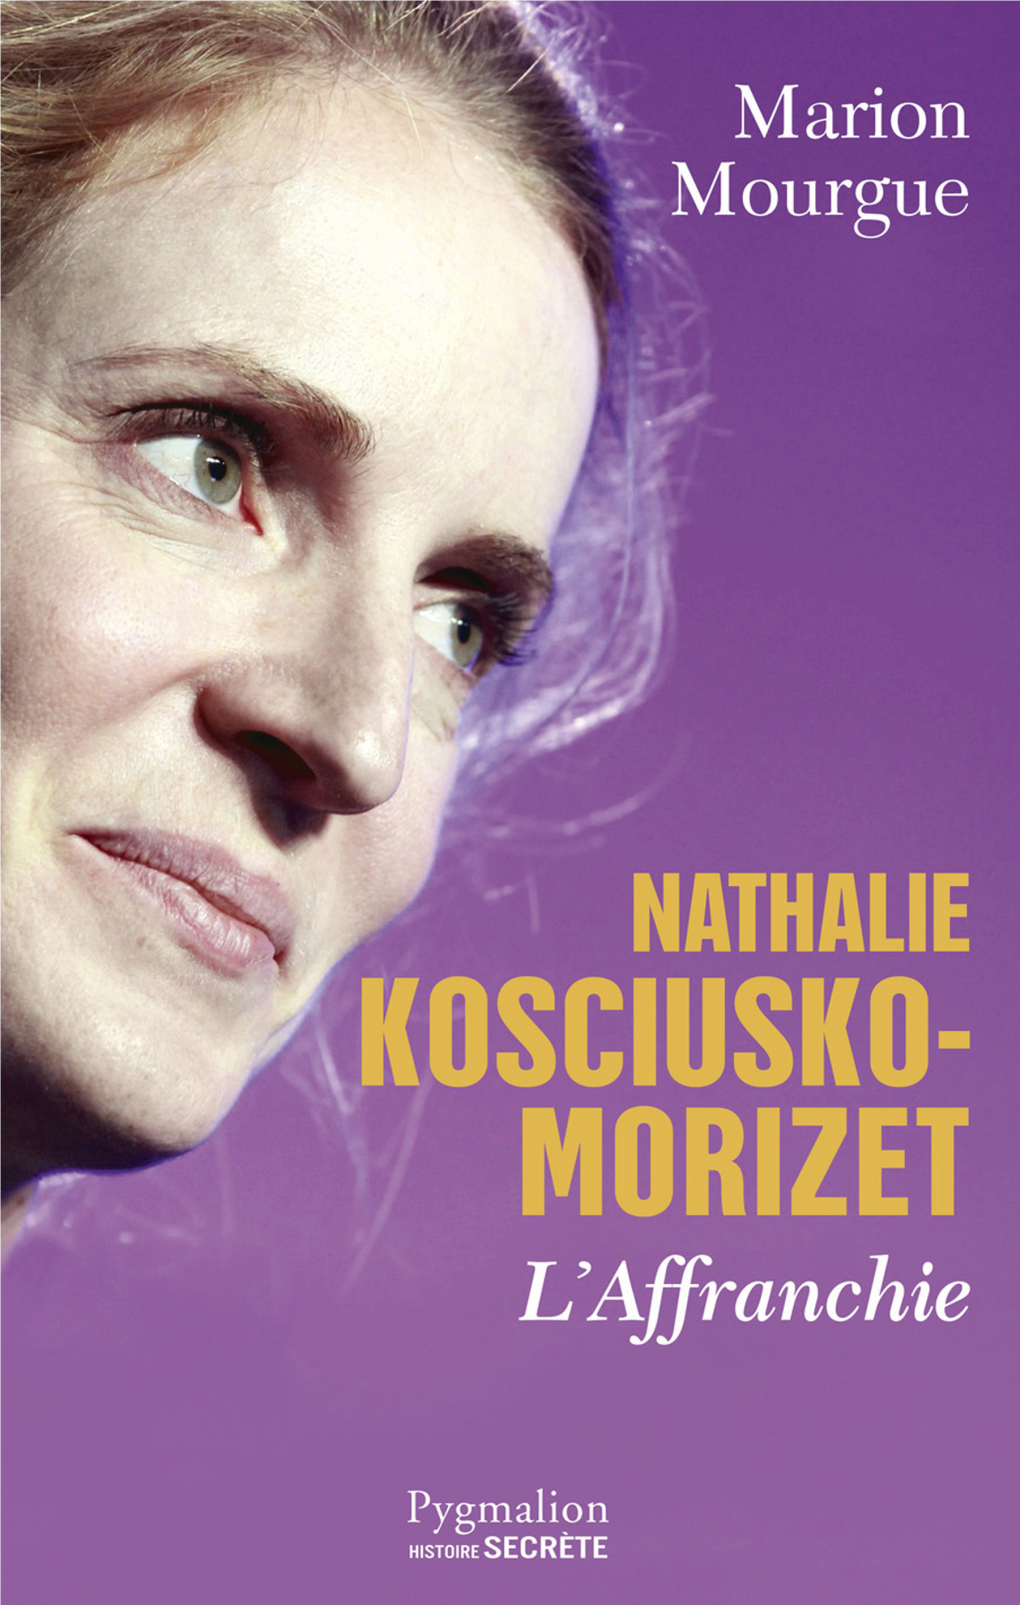 Nathalie Kosciusko-Morizet L’Affranchie DU MÊME AUTEUR